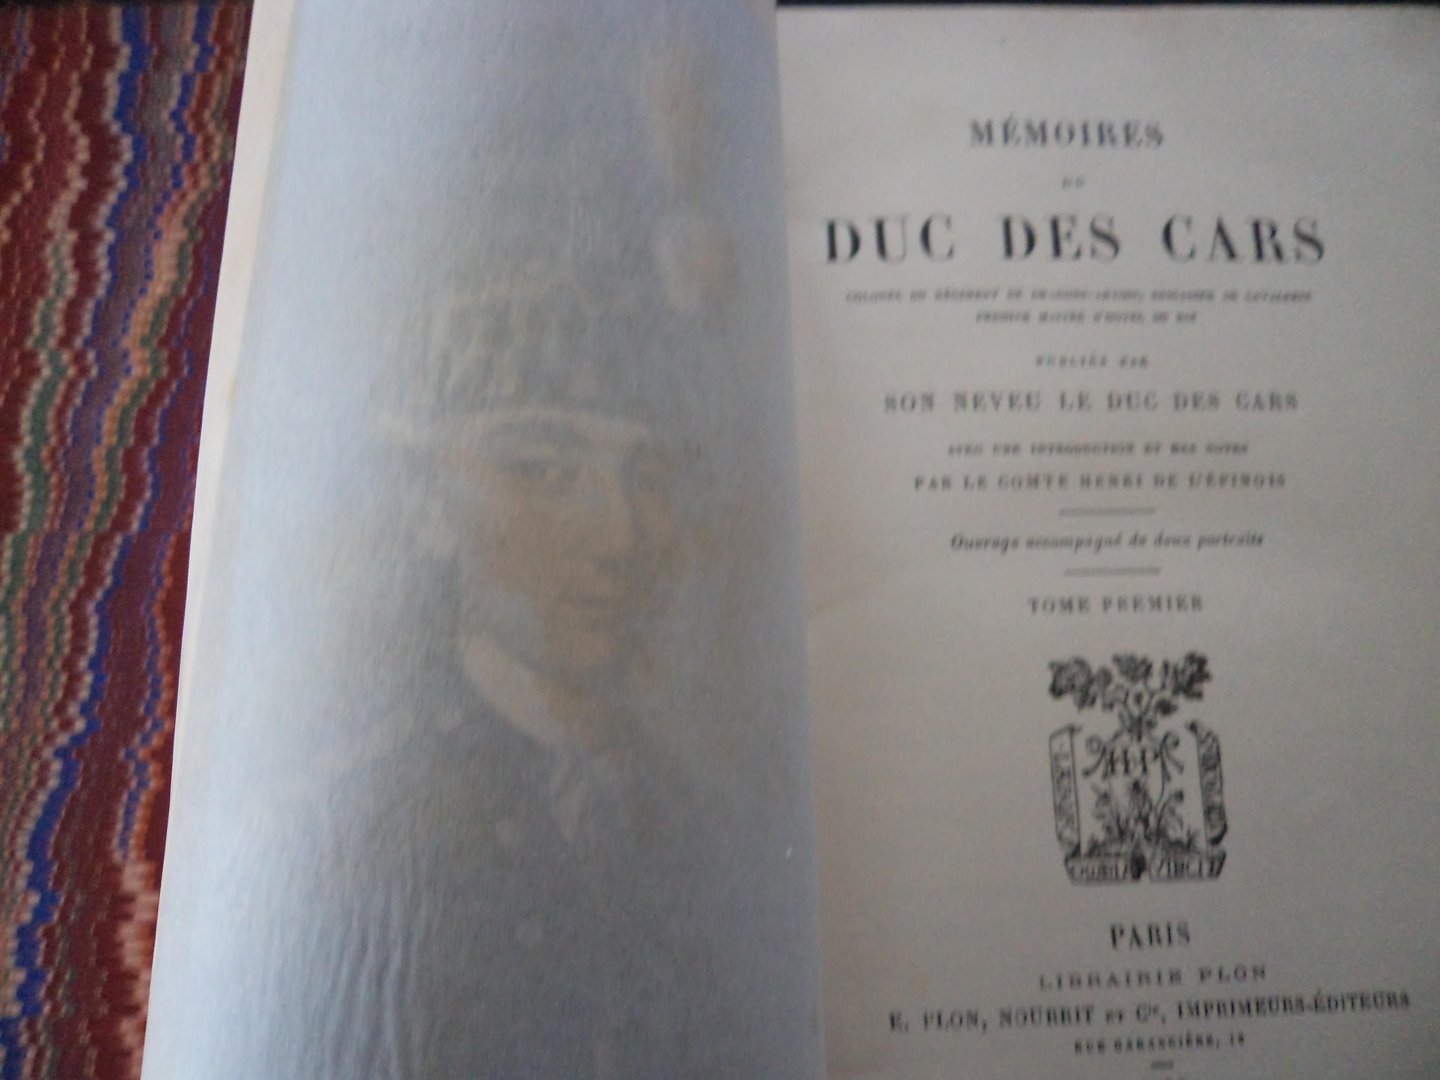 Le Duc des Cars (Son neveu -) - MEMOIRES du DUC DES CARS, Colonel du régiment de Dragons-Artois, Brigadier de Cavalerie, premier maître d'hôtel du roi, publiés par son neveu, le Duc des Cars. 2 tômes.